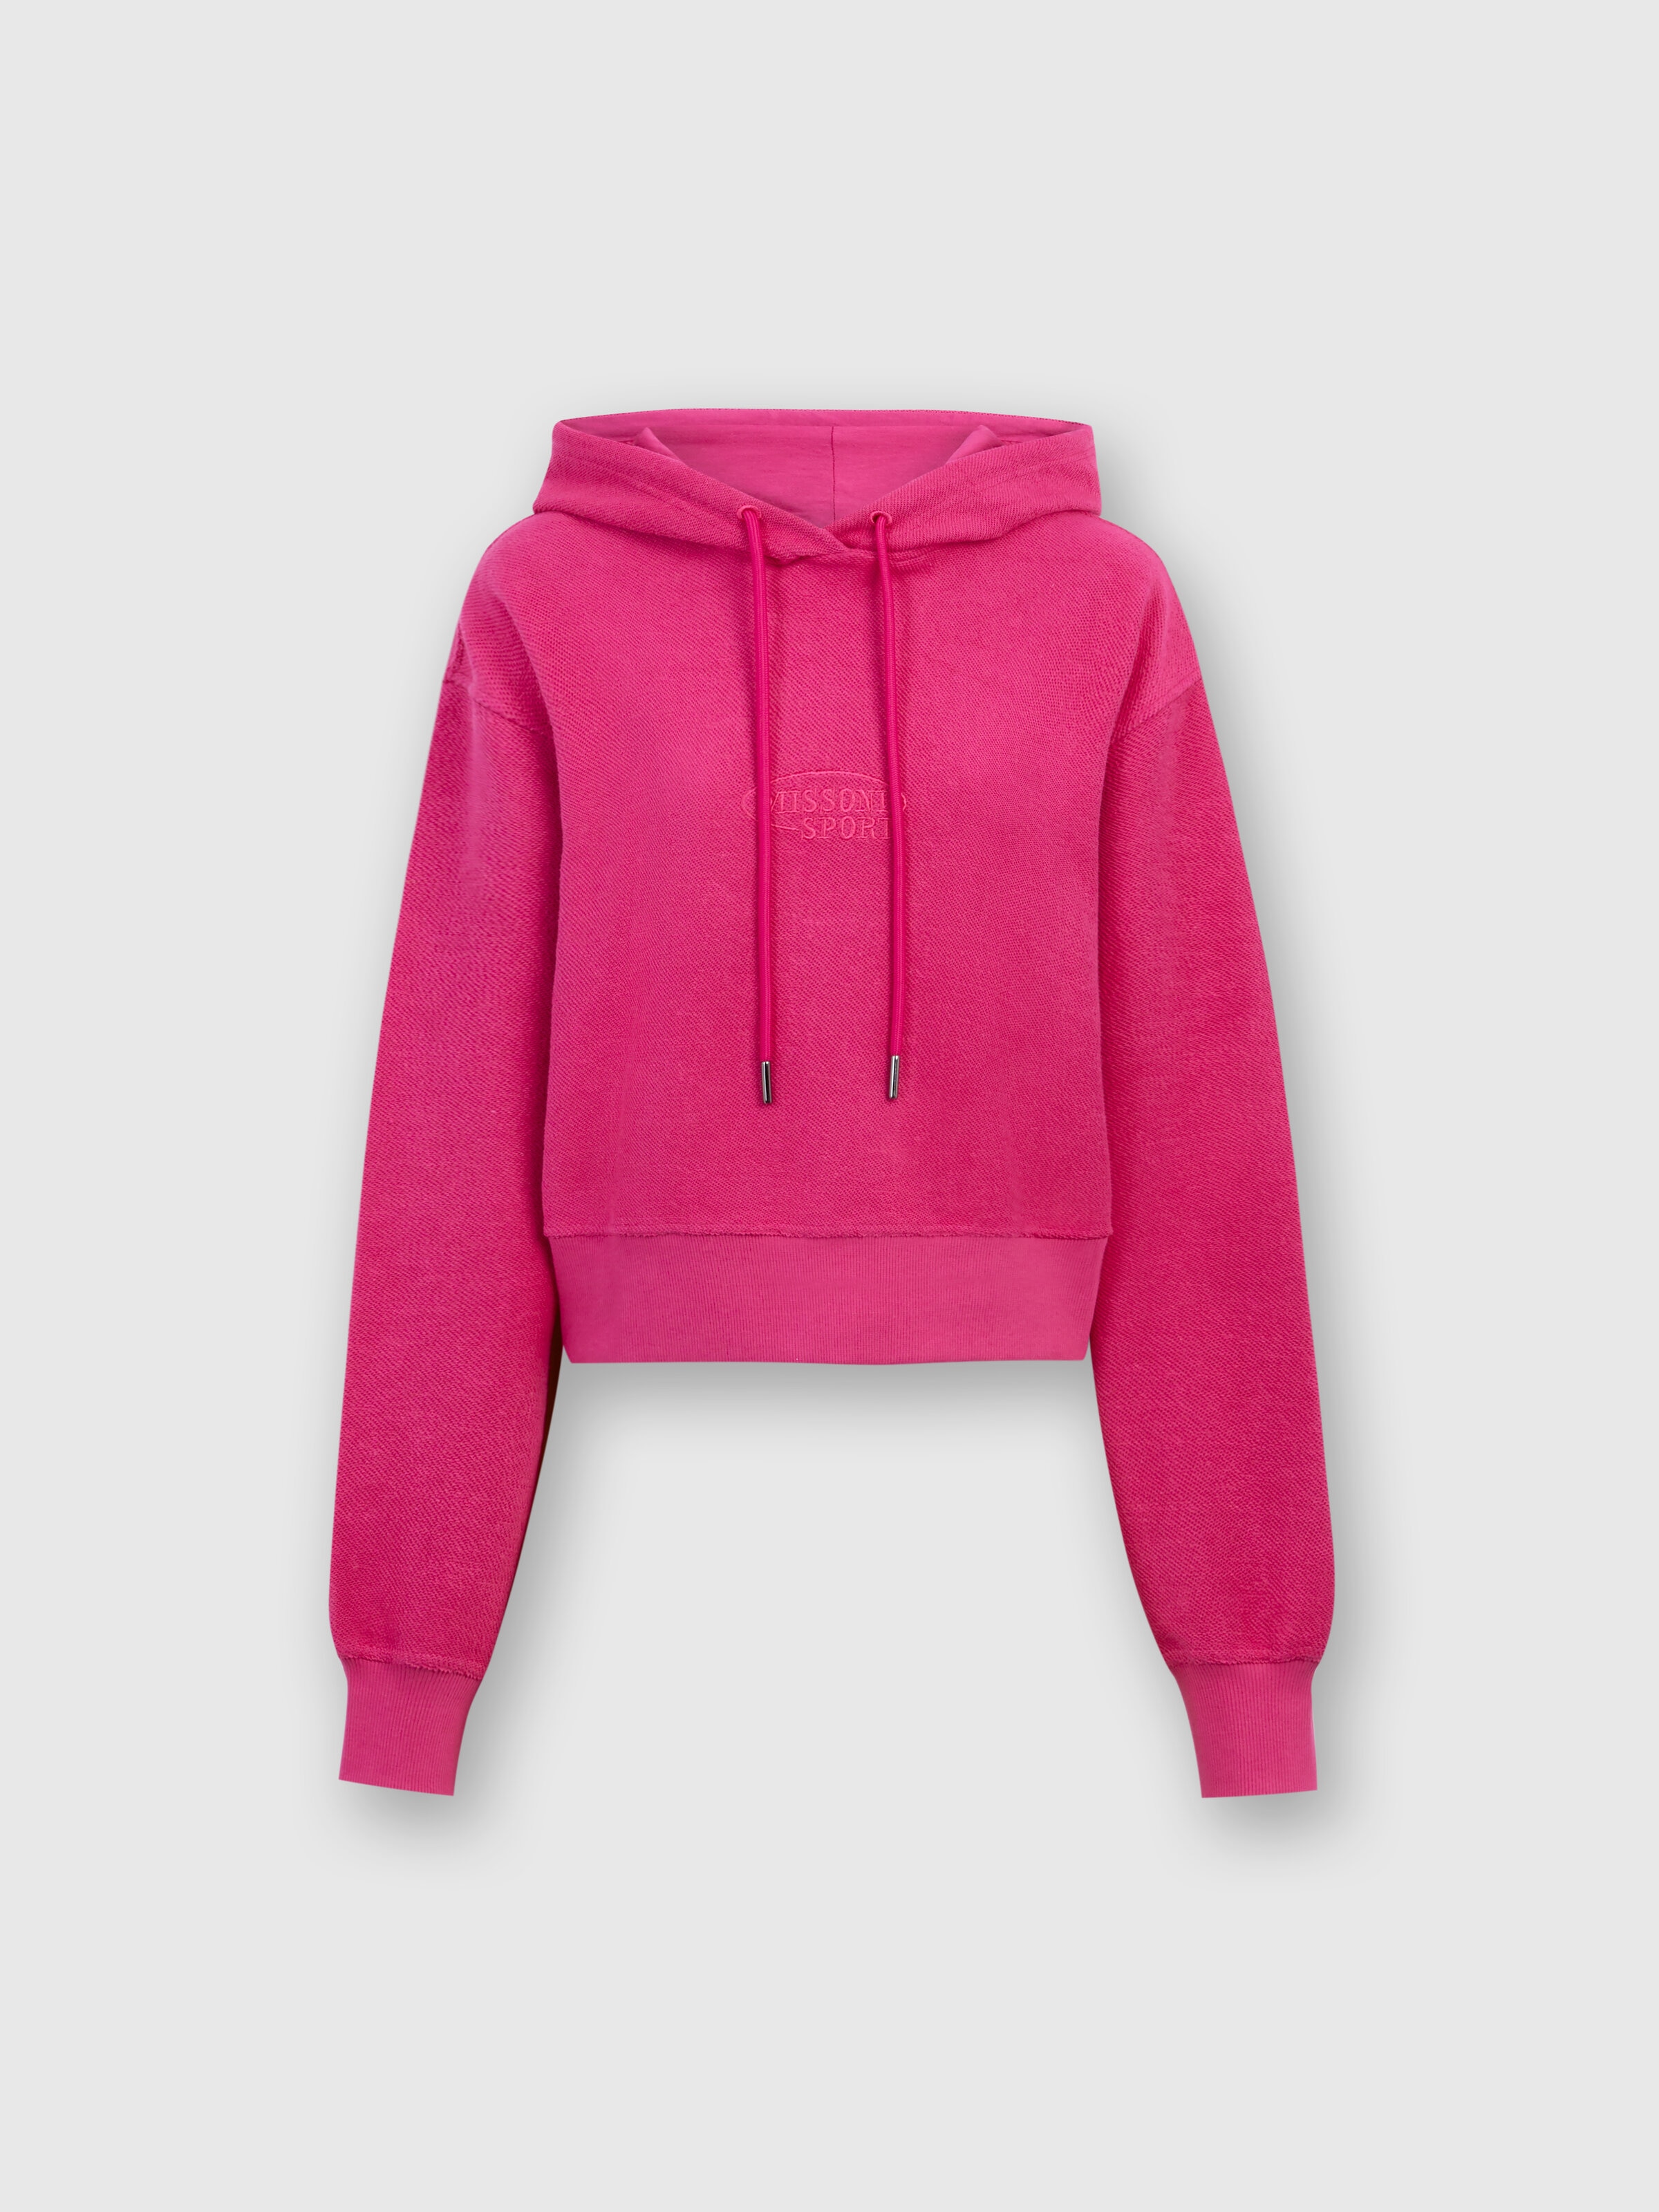 Crop brushed fleece sweatshirt with hood and logo, Red  - 0